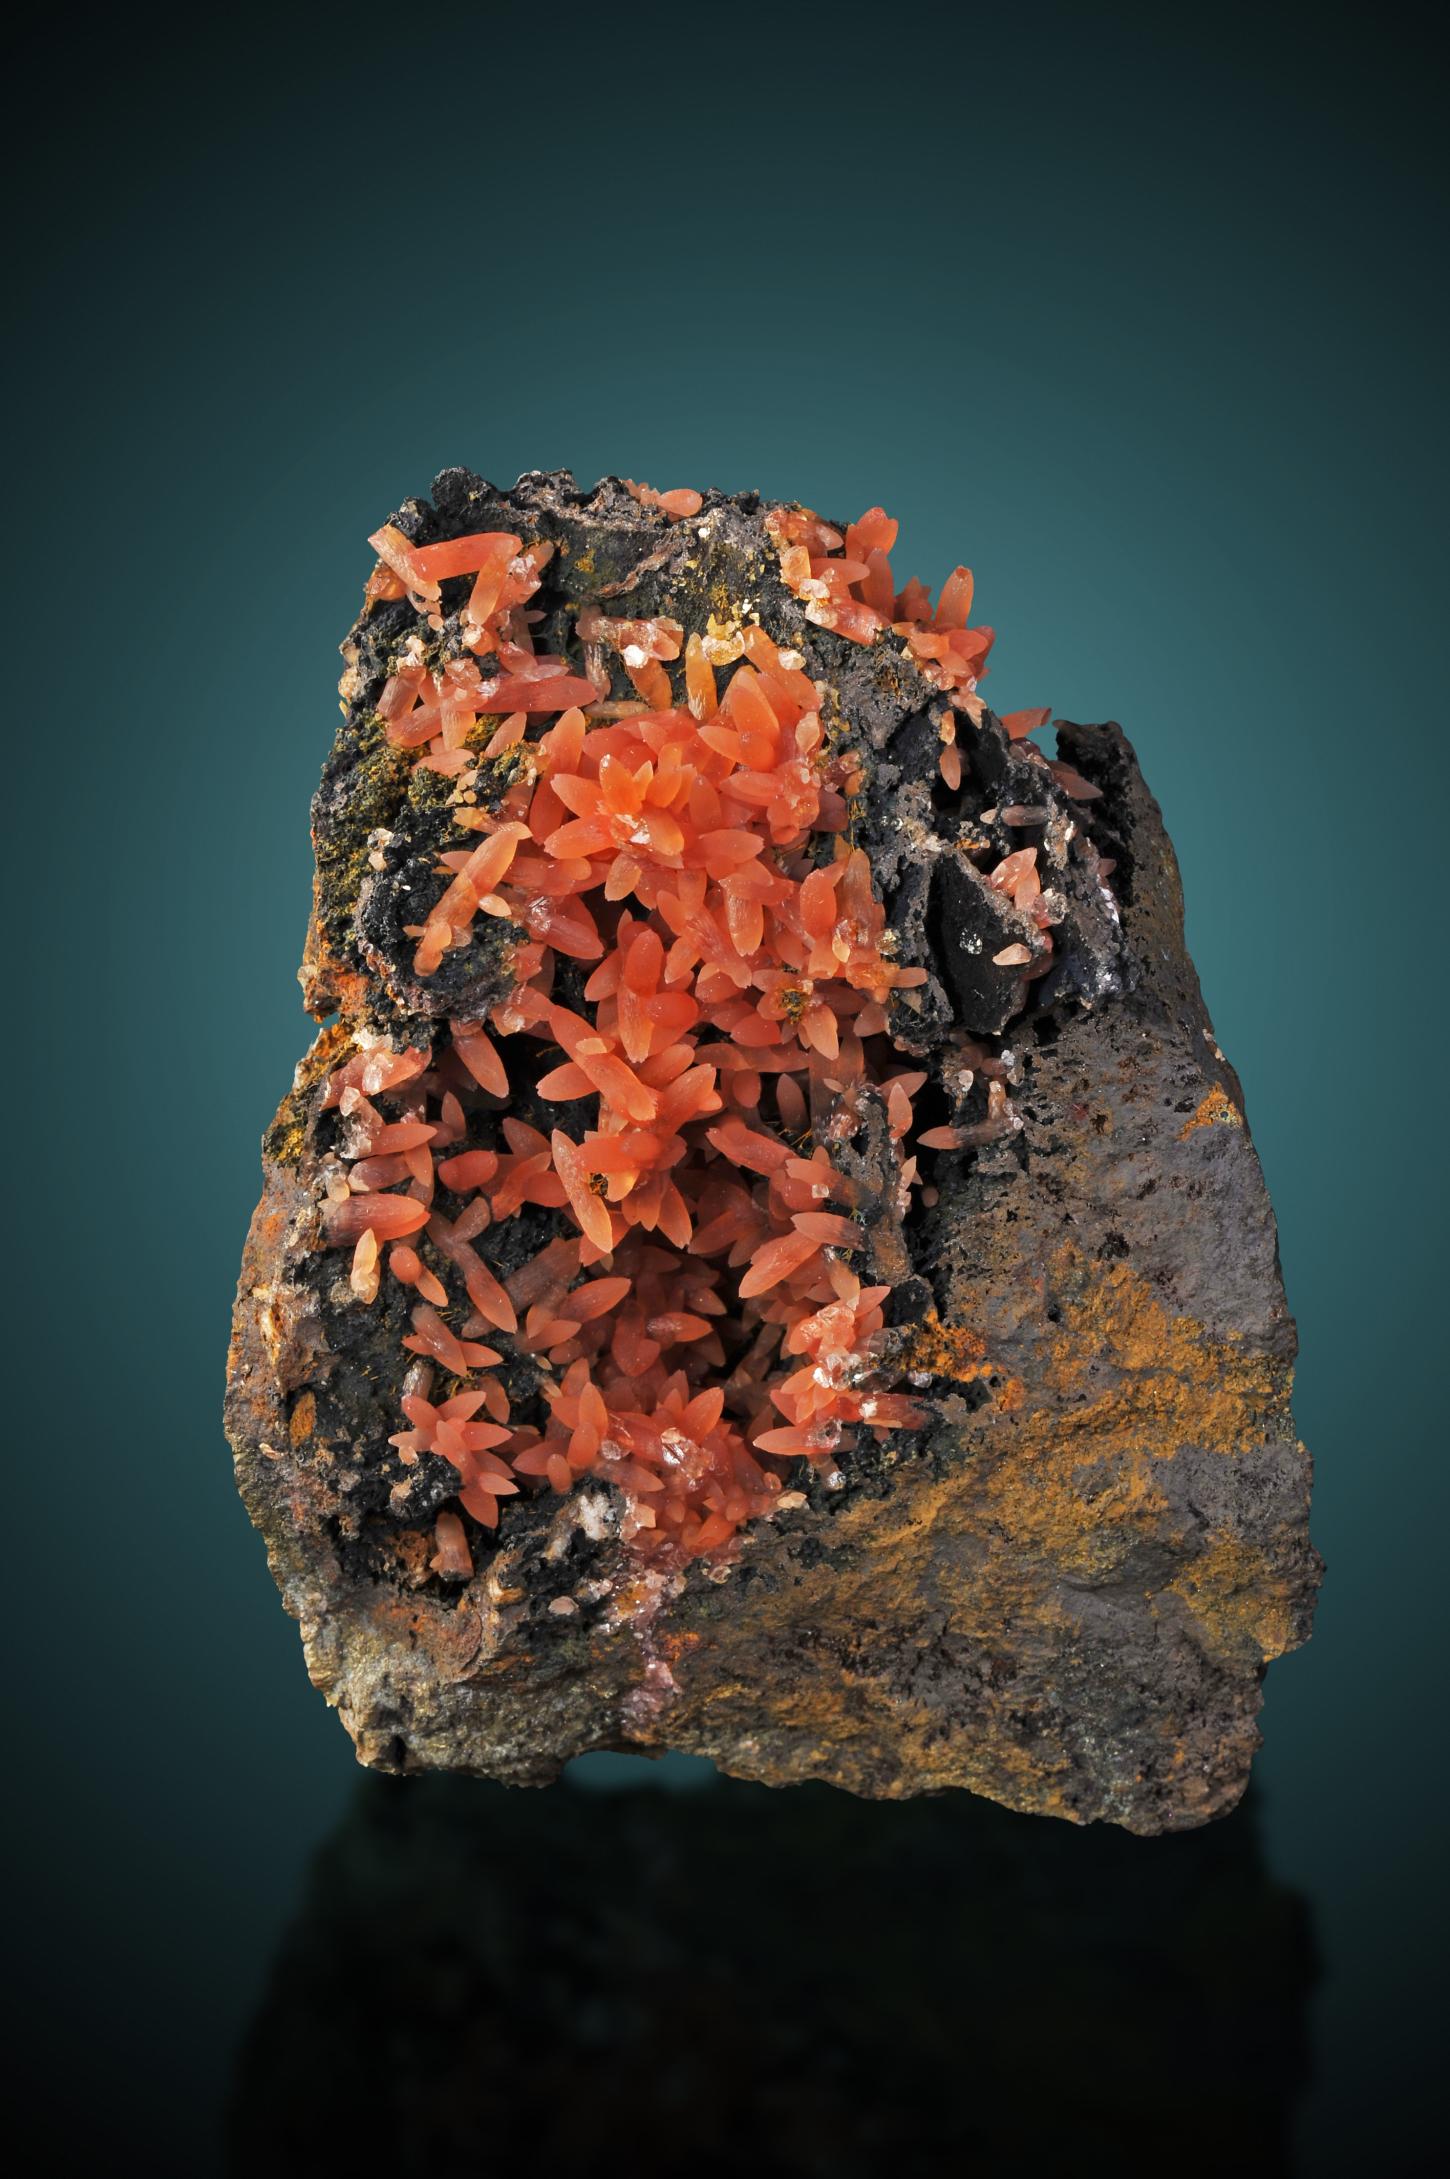 kleine orangerote Rhodochrositkristalle in Form von spitz zulaufenden kurzen Stäbchen sind teils wie Blütenblätter angeordnet auf einer dunkelschwarzen Matrix